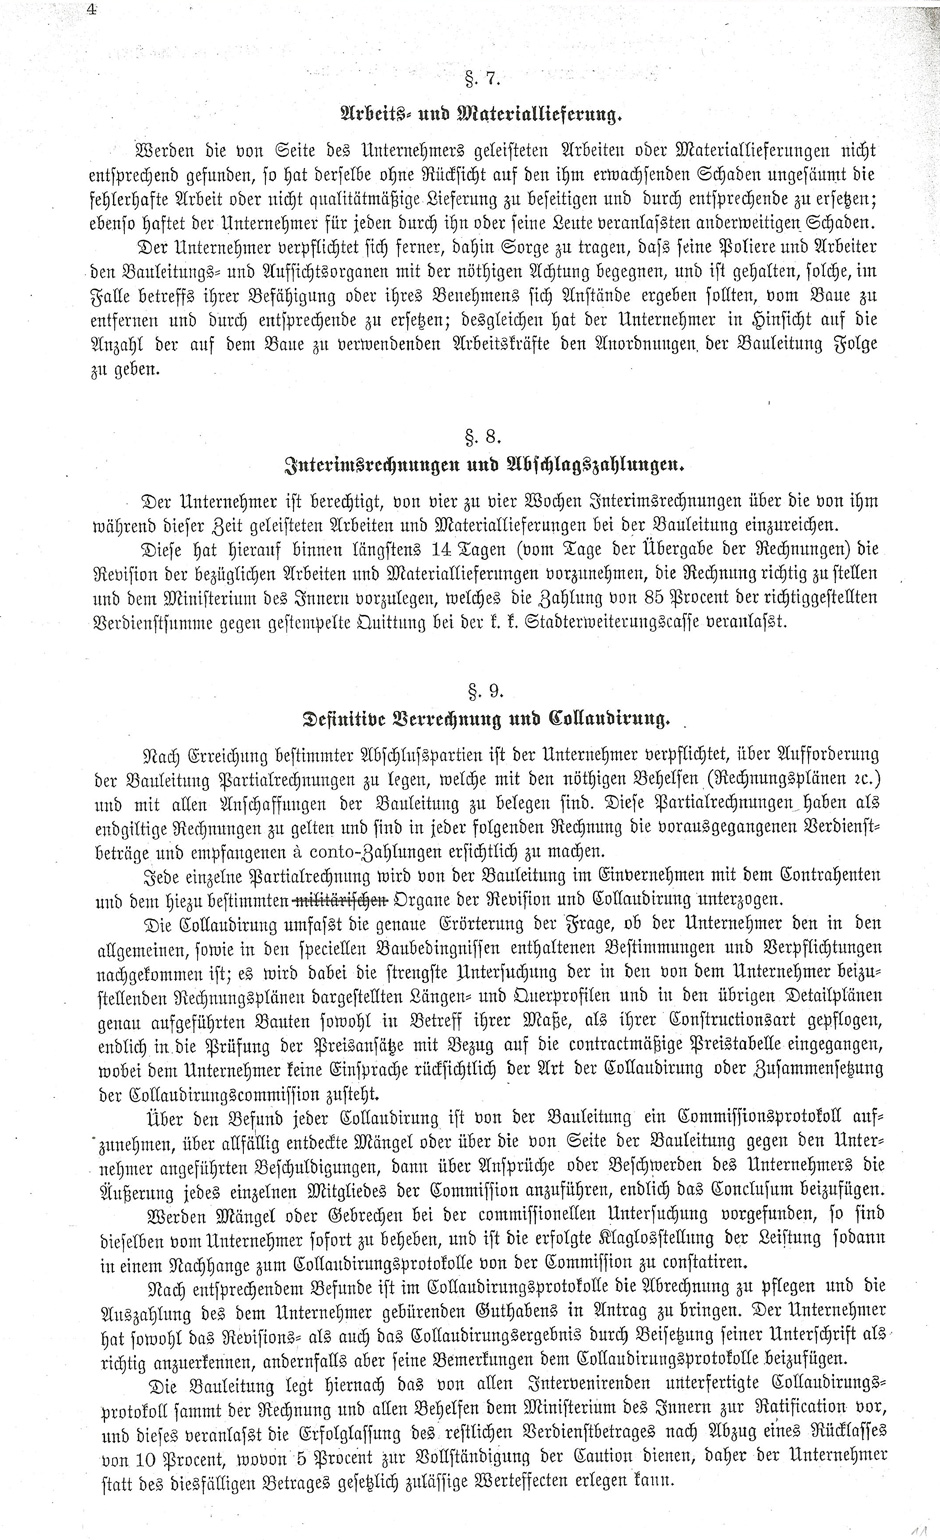 Lieferung von Dachkonstruktionen für das Haus-Hof-Staatsarchiv, Blatt 11